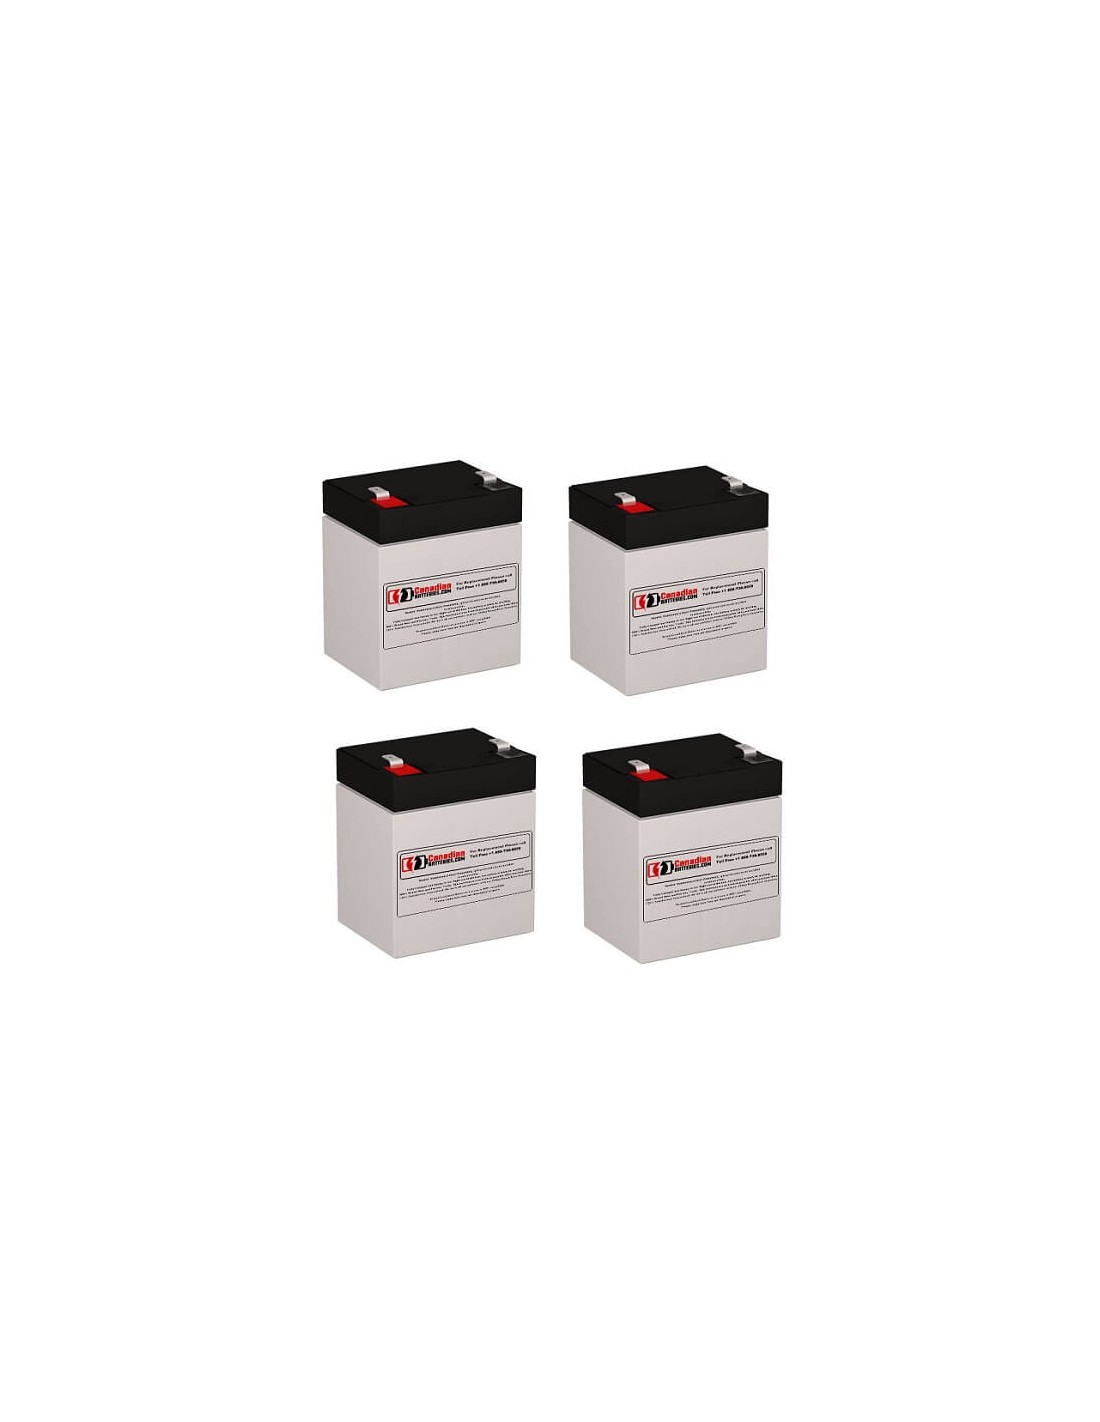 Batteries for Belkin F6c150 UPS, 4 x 12V, 5Ah - 60Wh